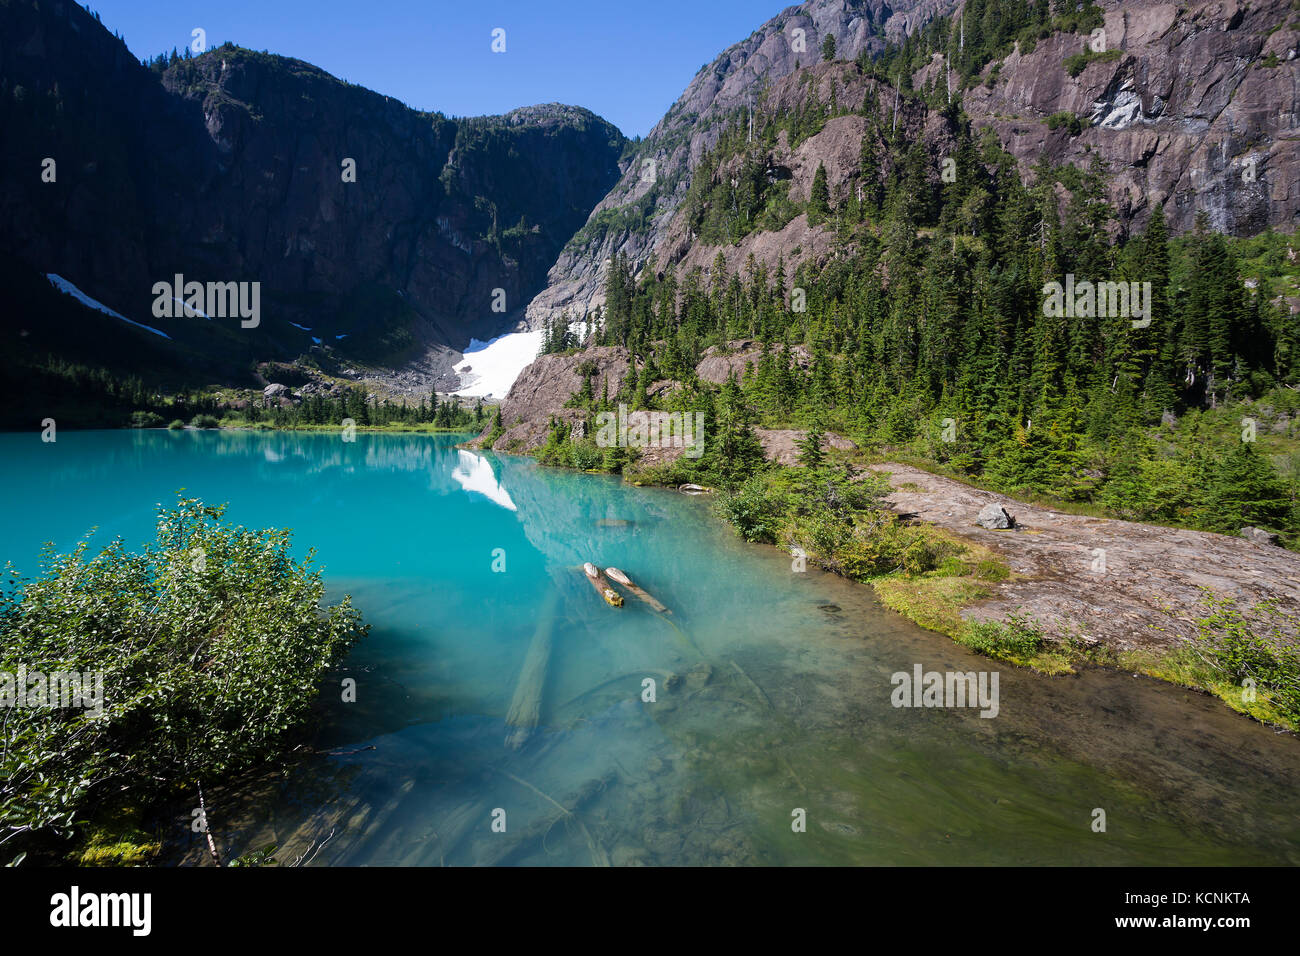 L'eau turquoise du lac sam siècle reflète un paysage de montagnes dans le parc Strathcona, l'île de Vancouver, Colombie-Britannique, Canada Banque D'Images